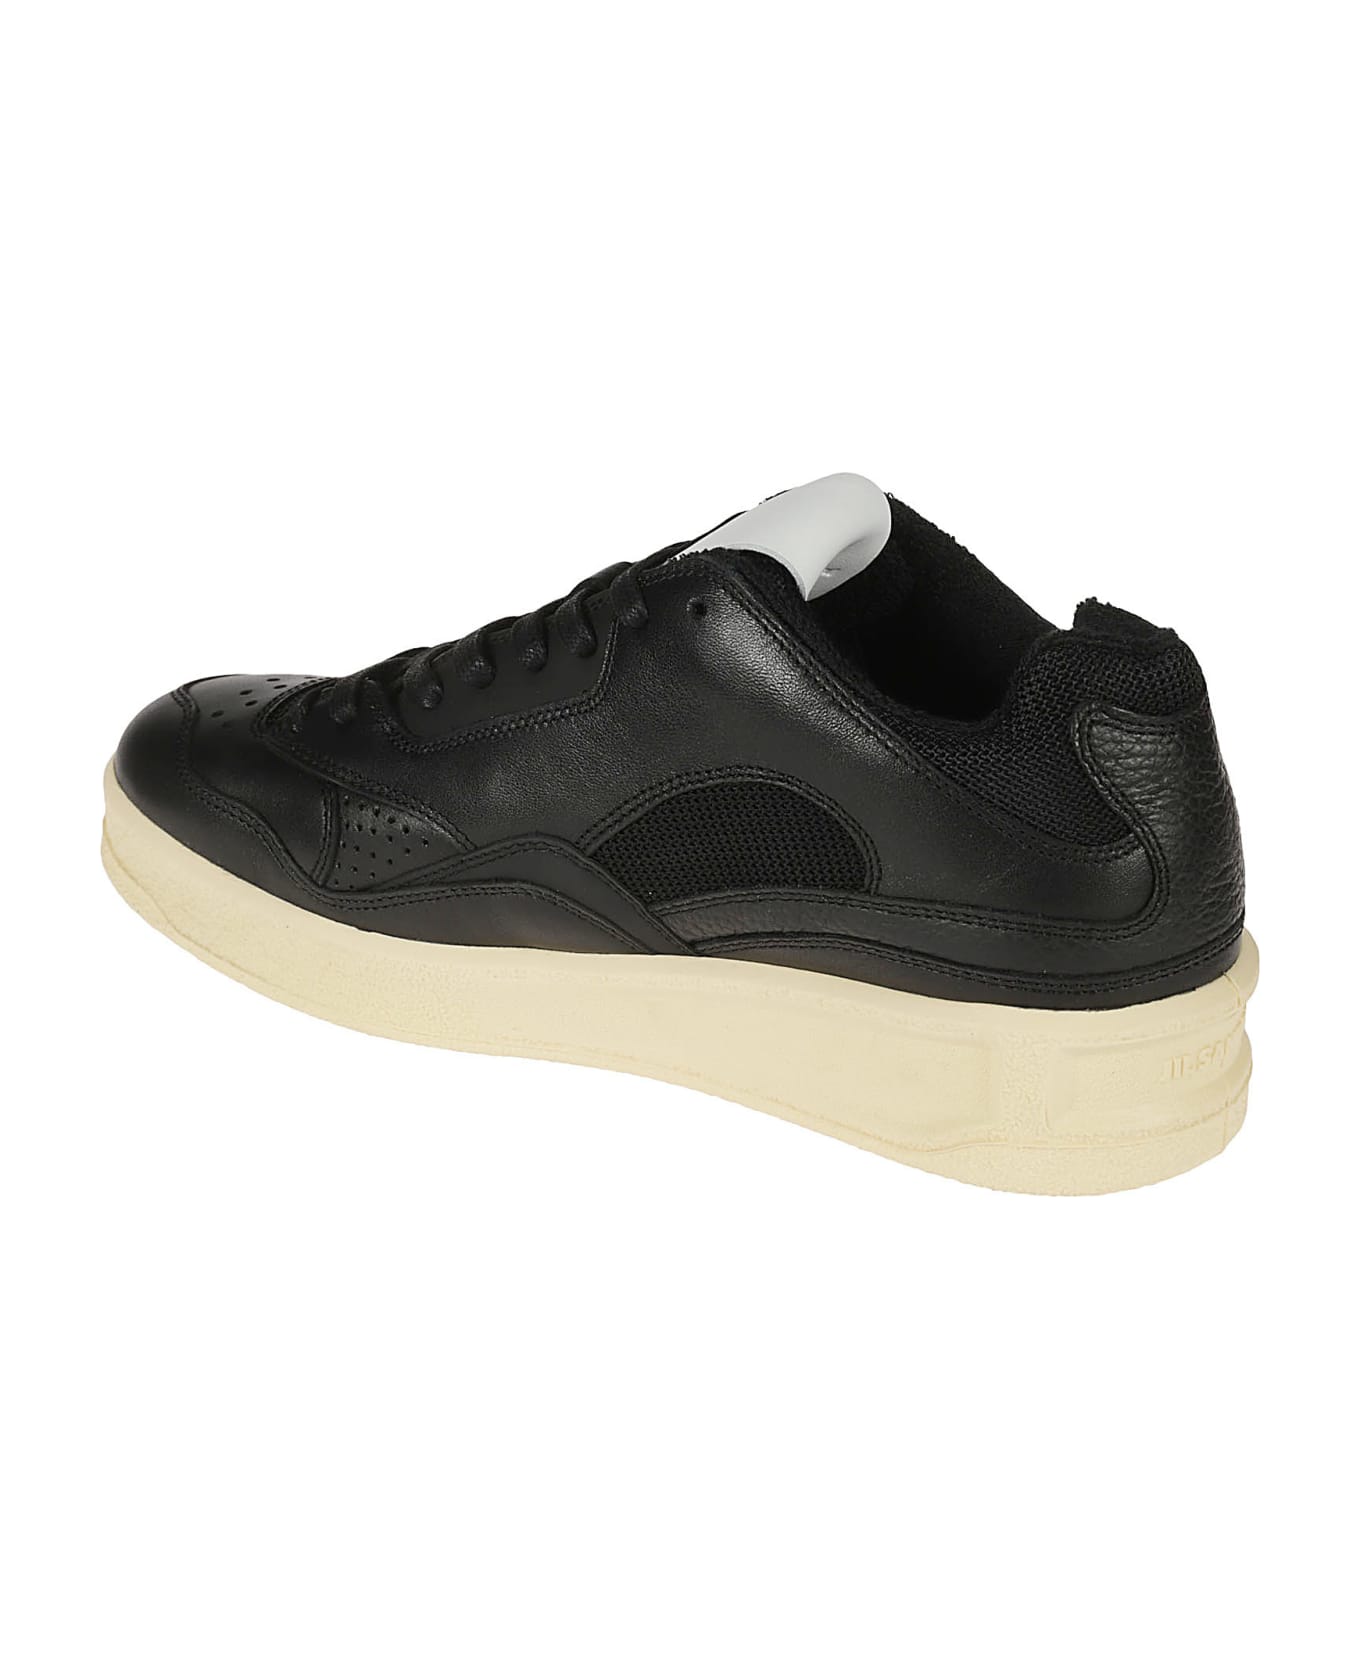 Jil Sander Mesh Paneled Sneakers - Black/Ecru